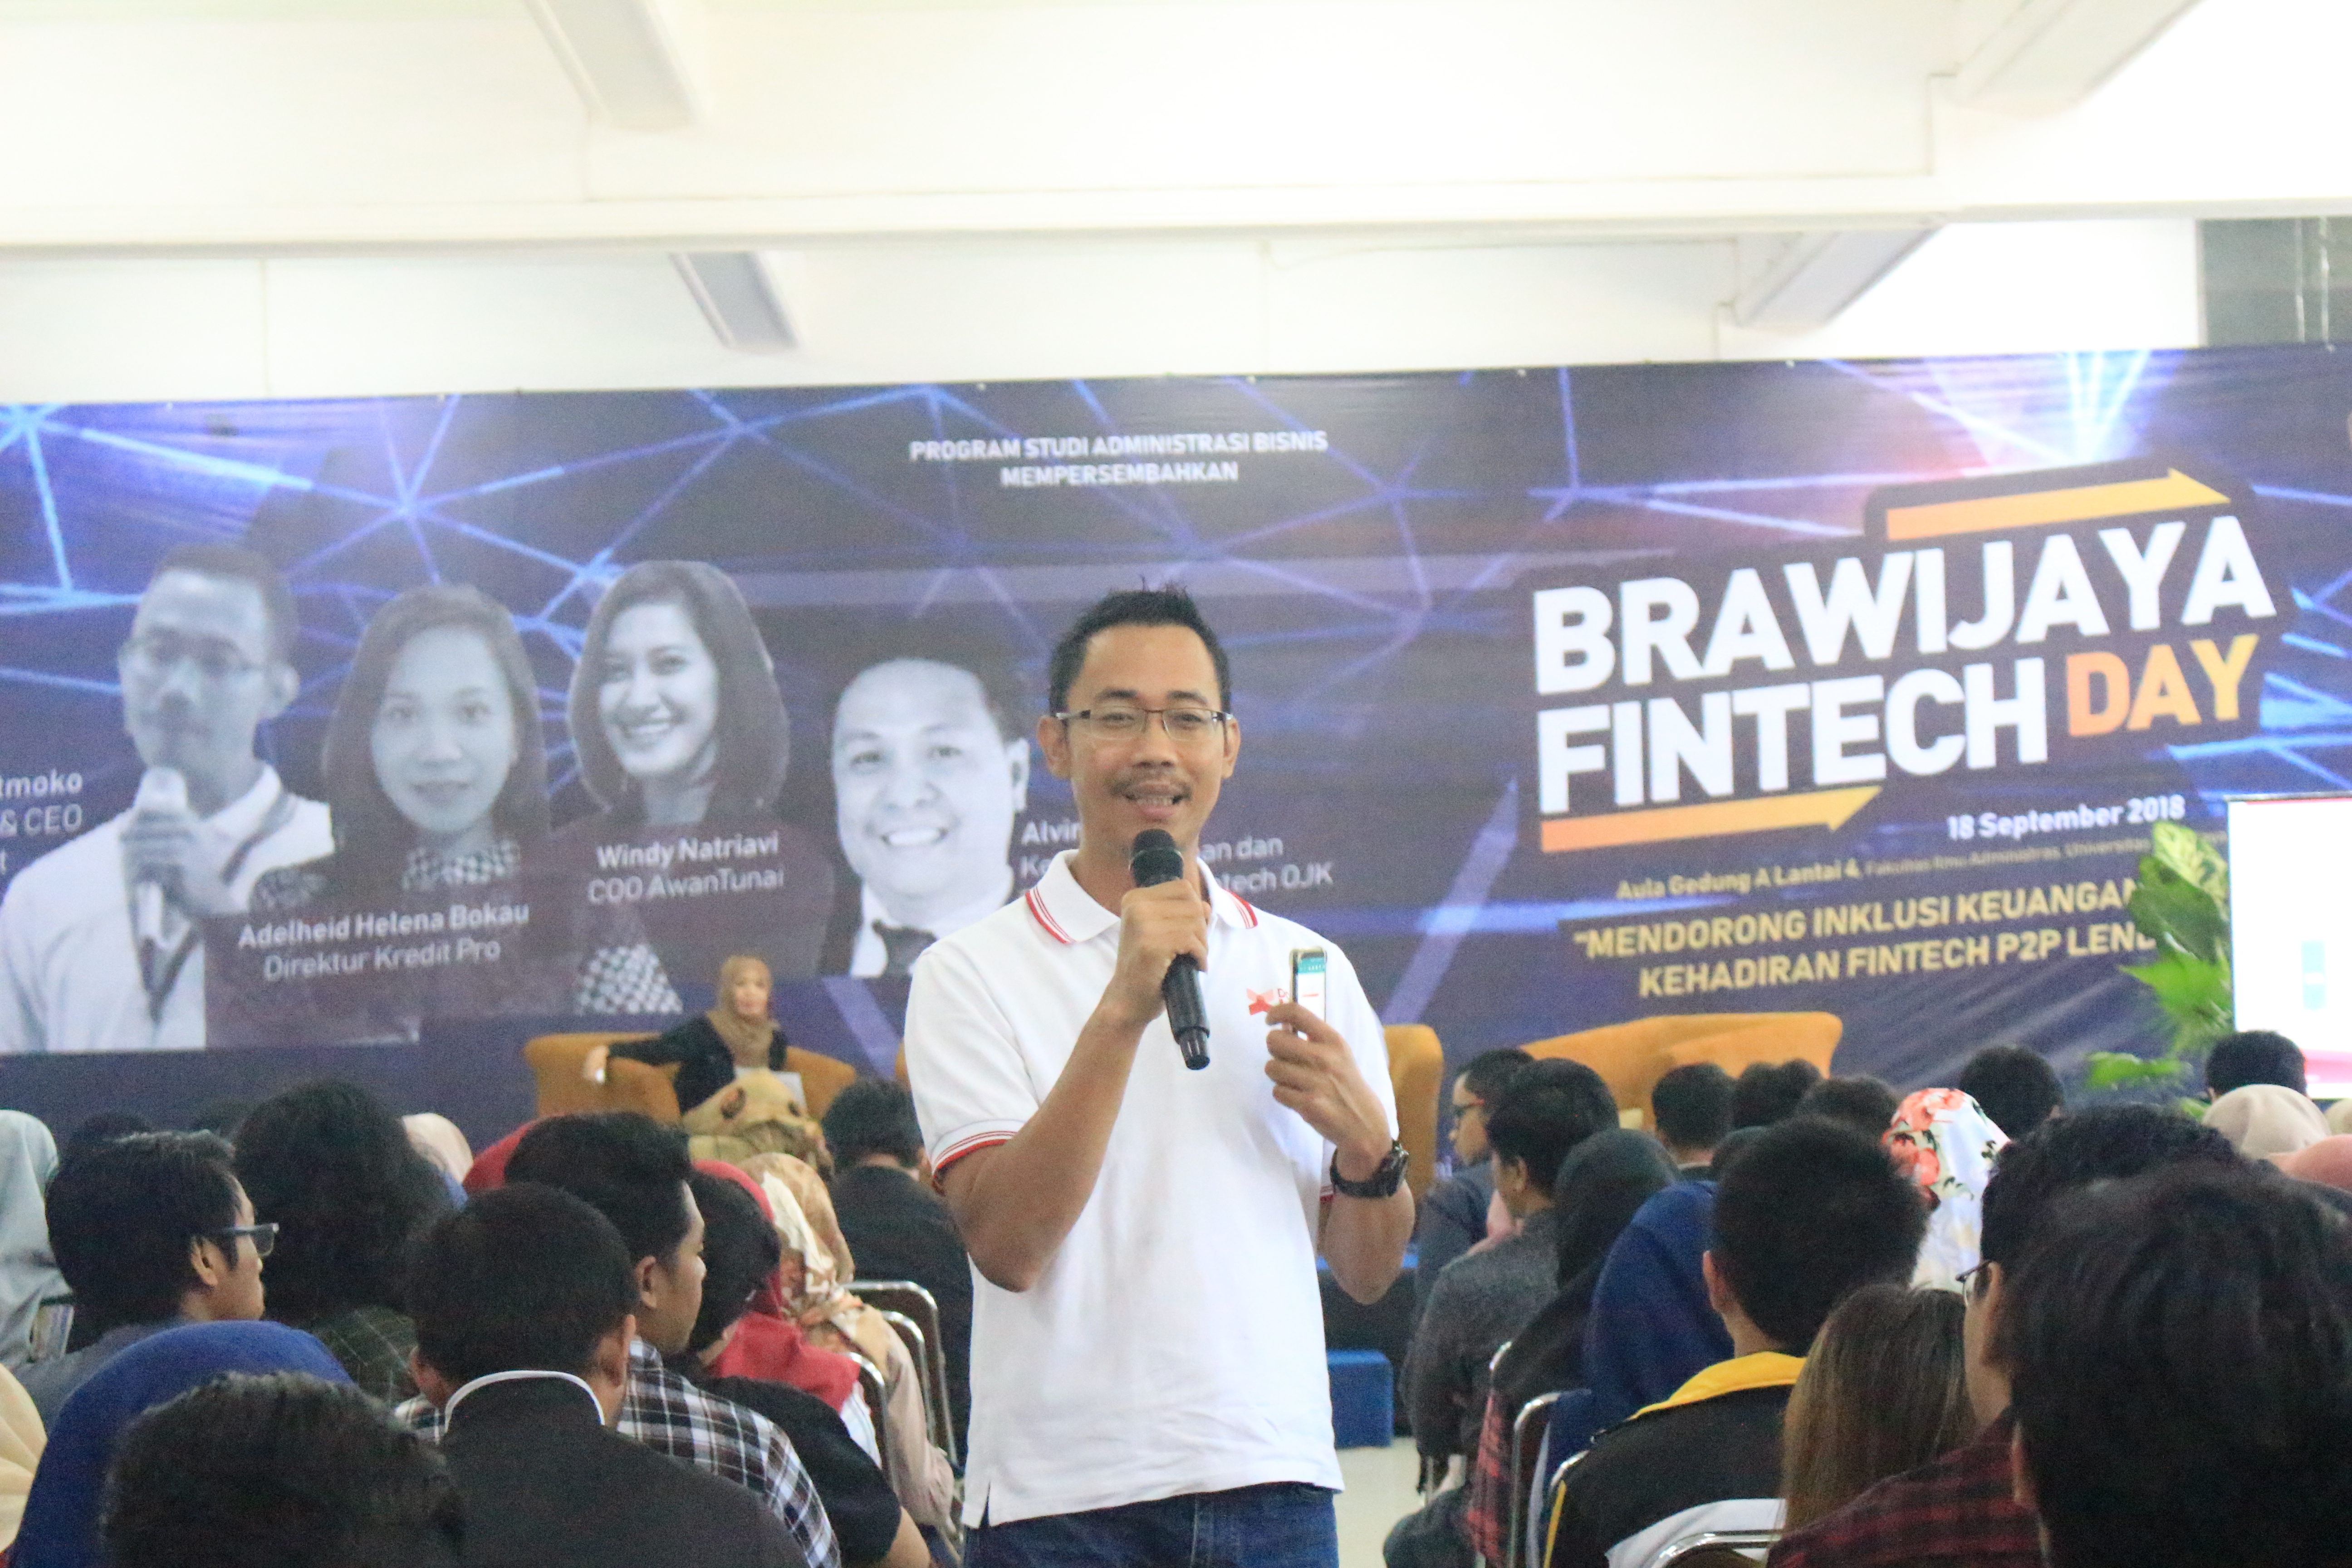 Kenalkan Inklusi Keuangan Berbasis Teknologi Dalam Brawijaya Fintech Day